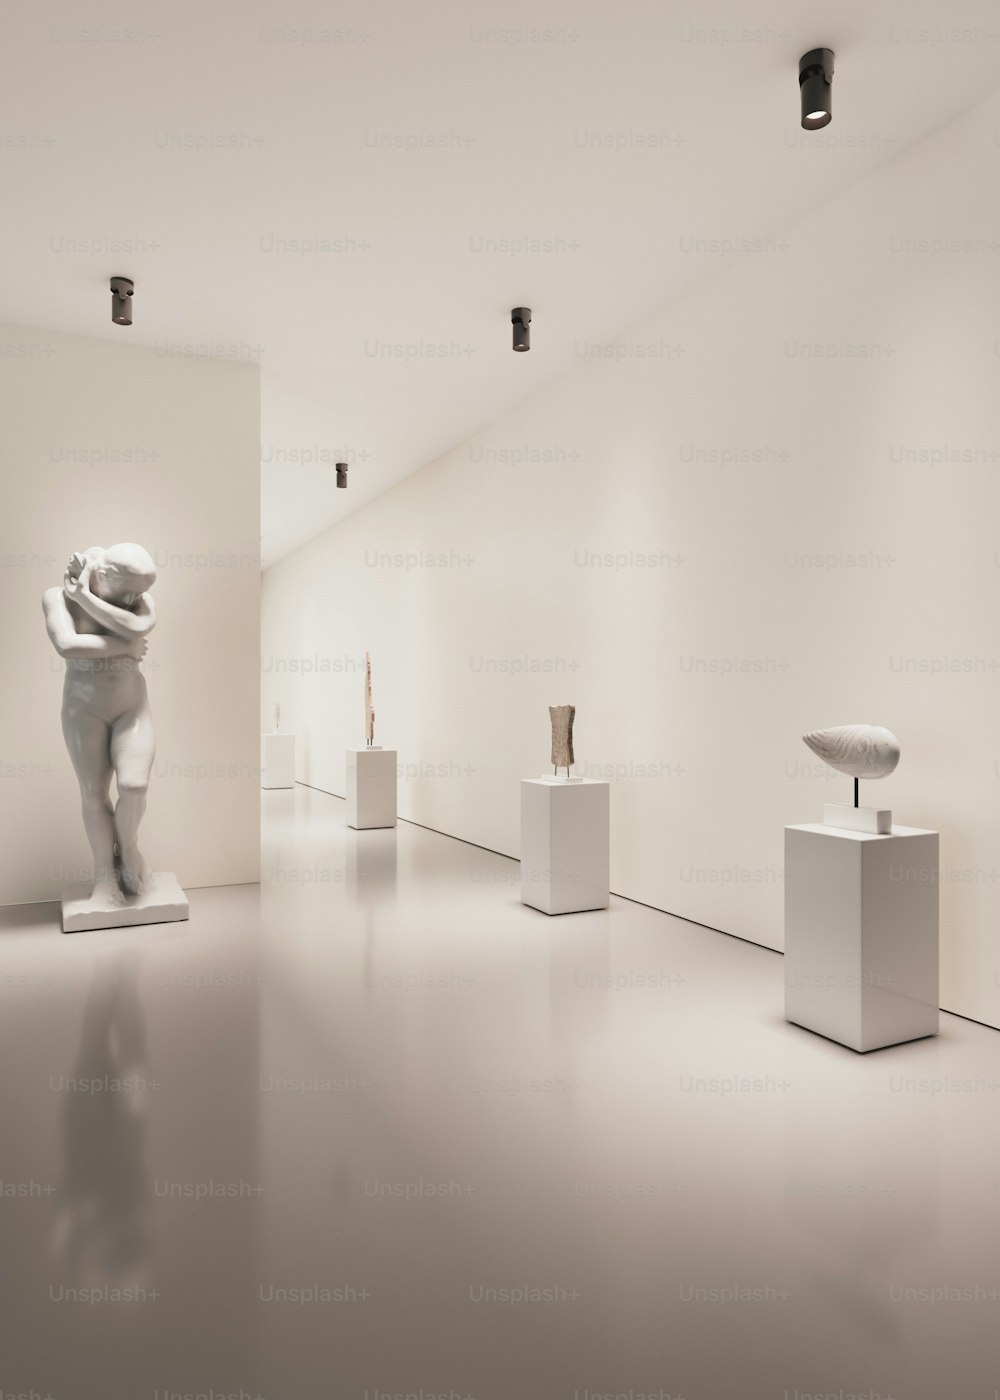 Una sala blanca llena de esculturas de diferentes formas y tamaños